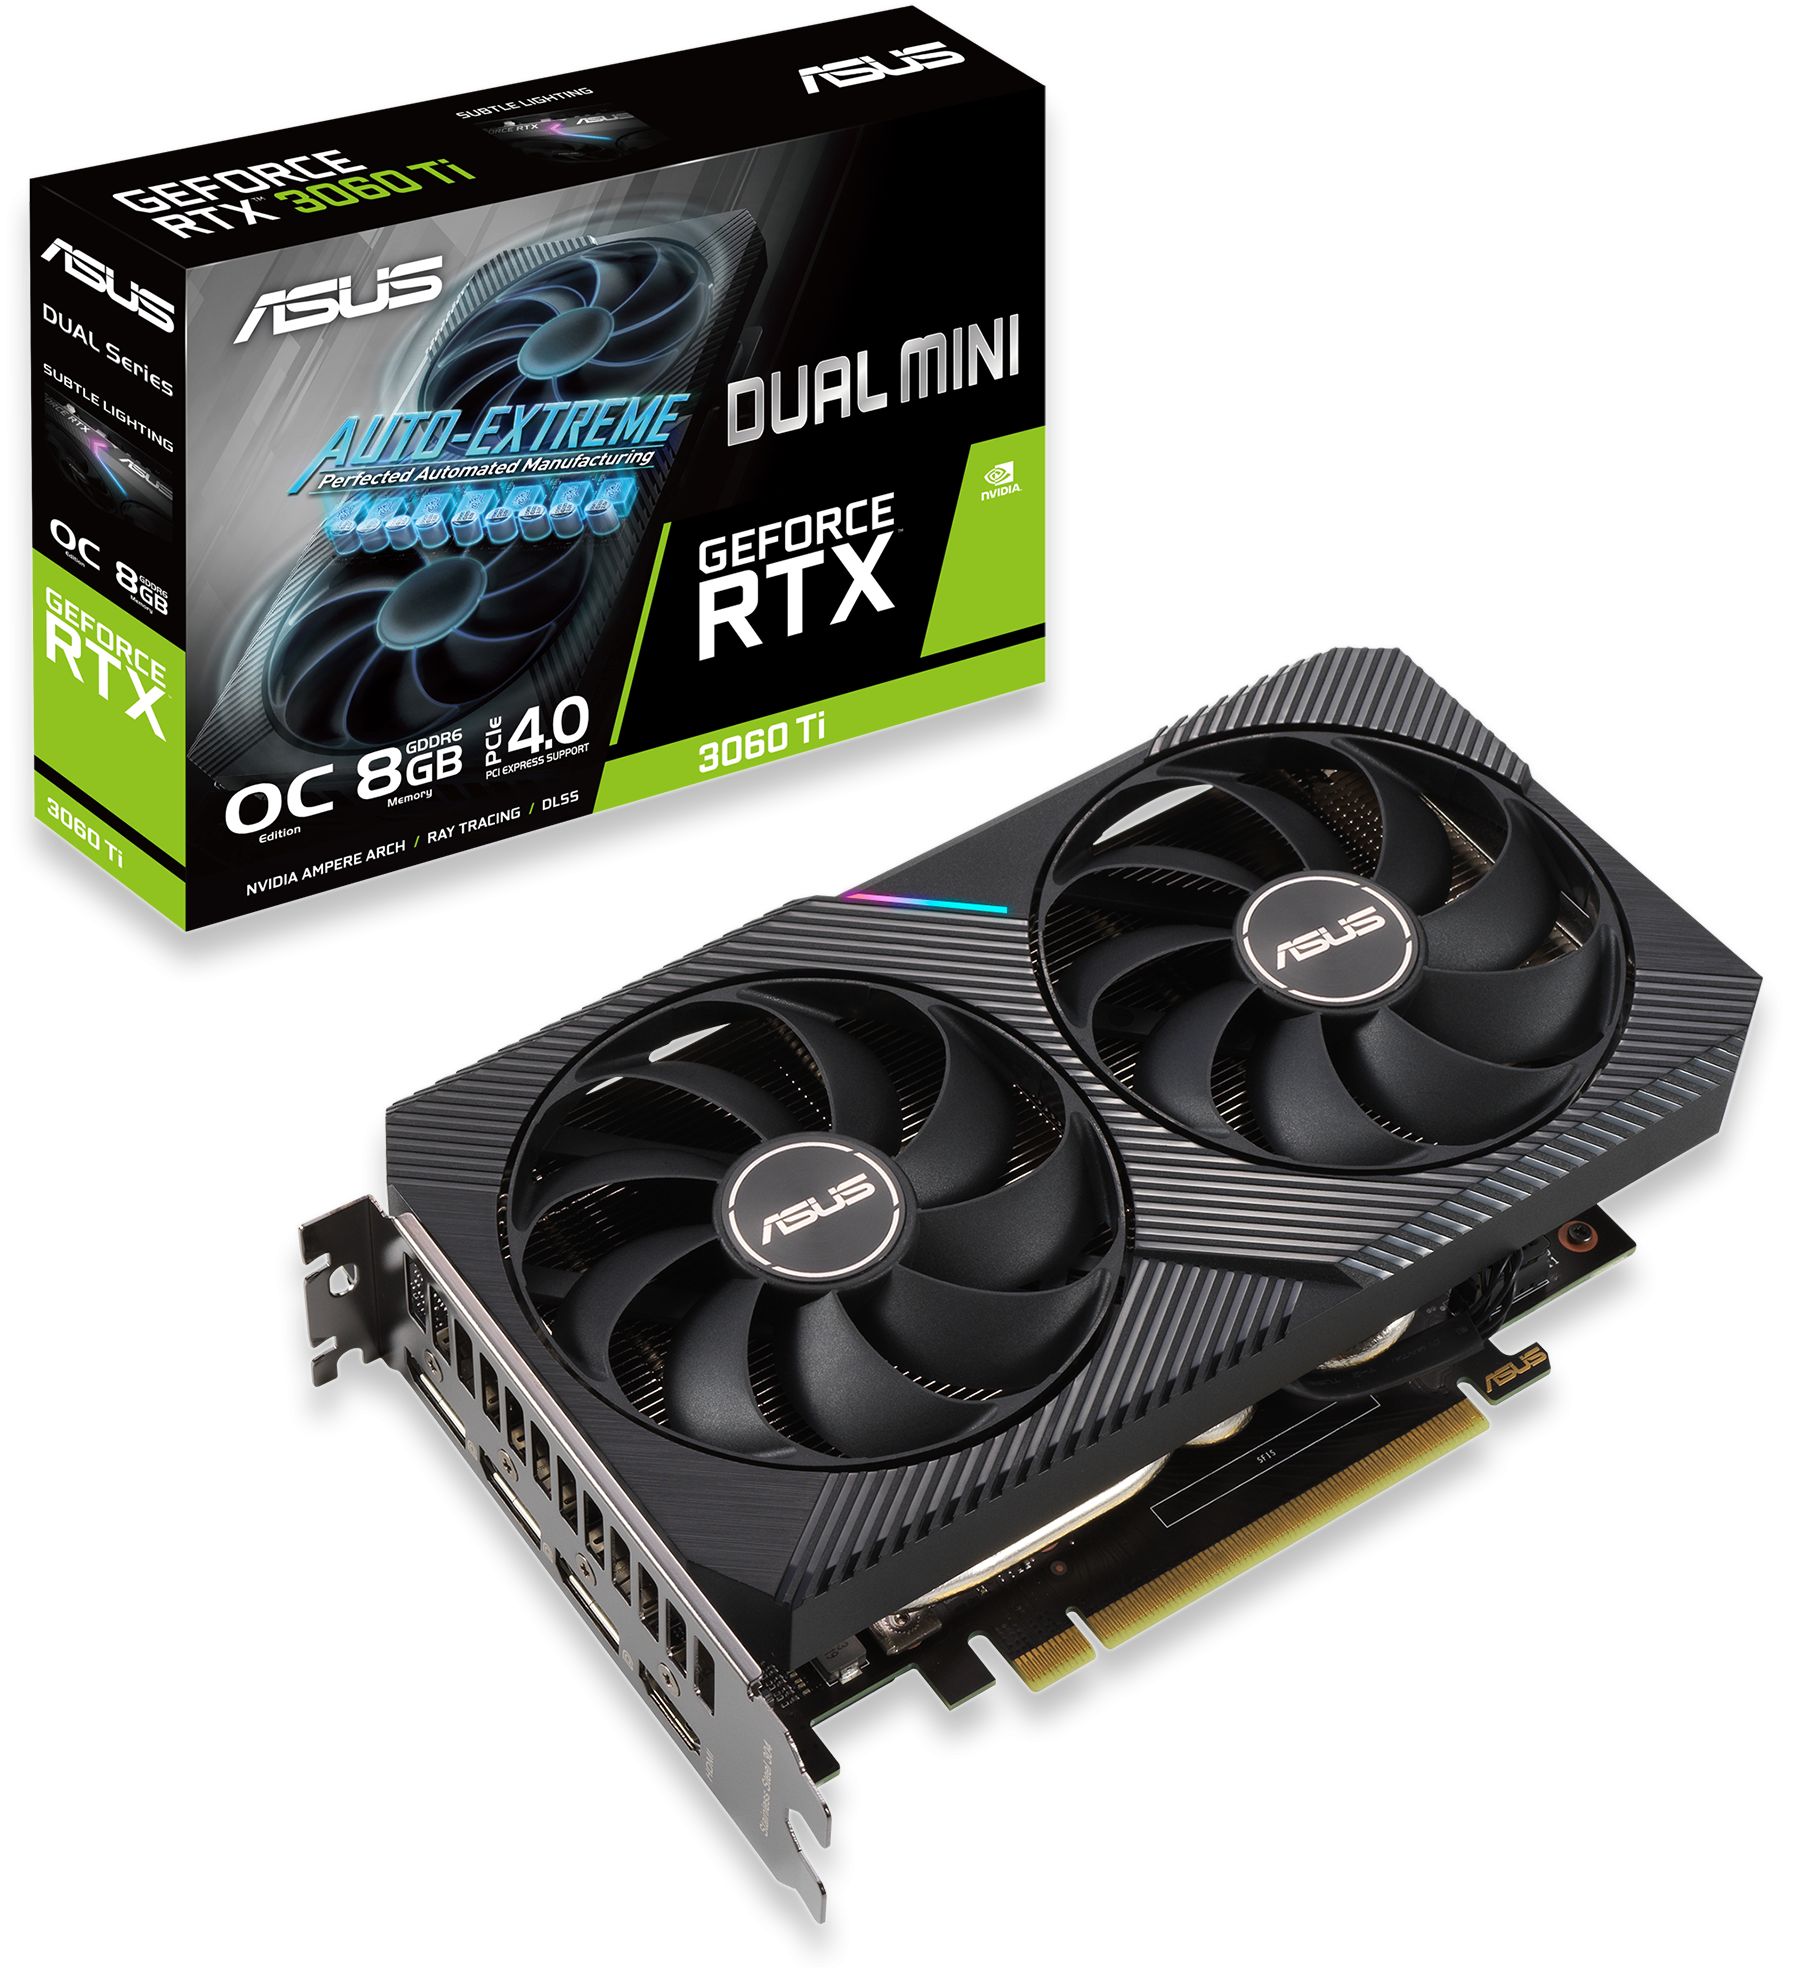 GeForce RTX 3060 Ti DUAL V2 MINI OC 8GB Semi-Fanless Graphics Card